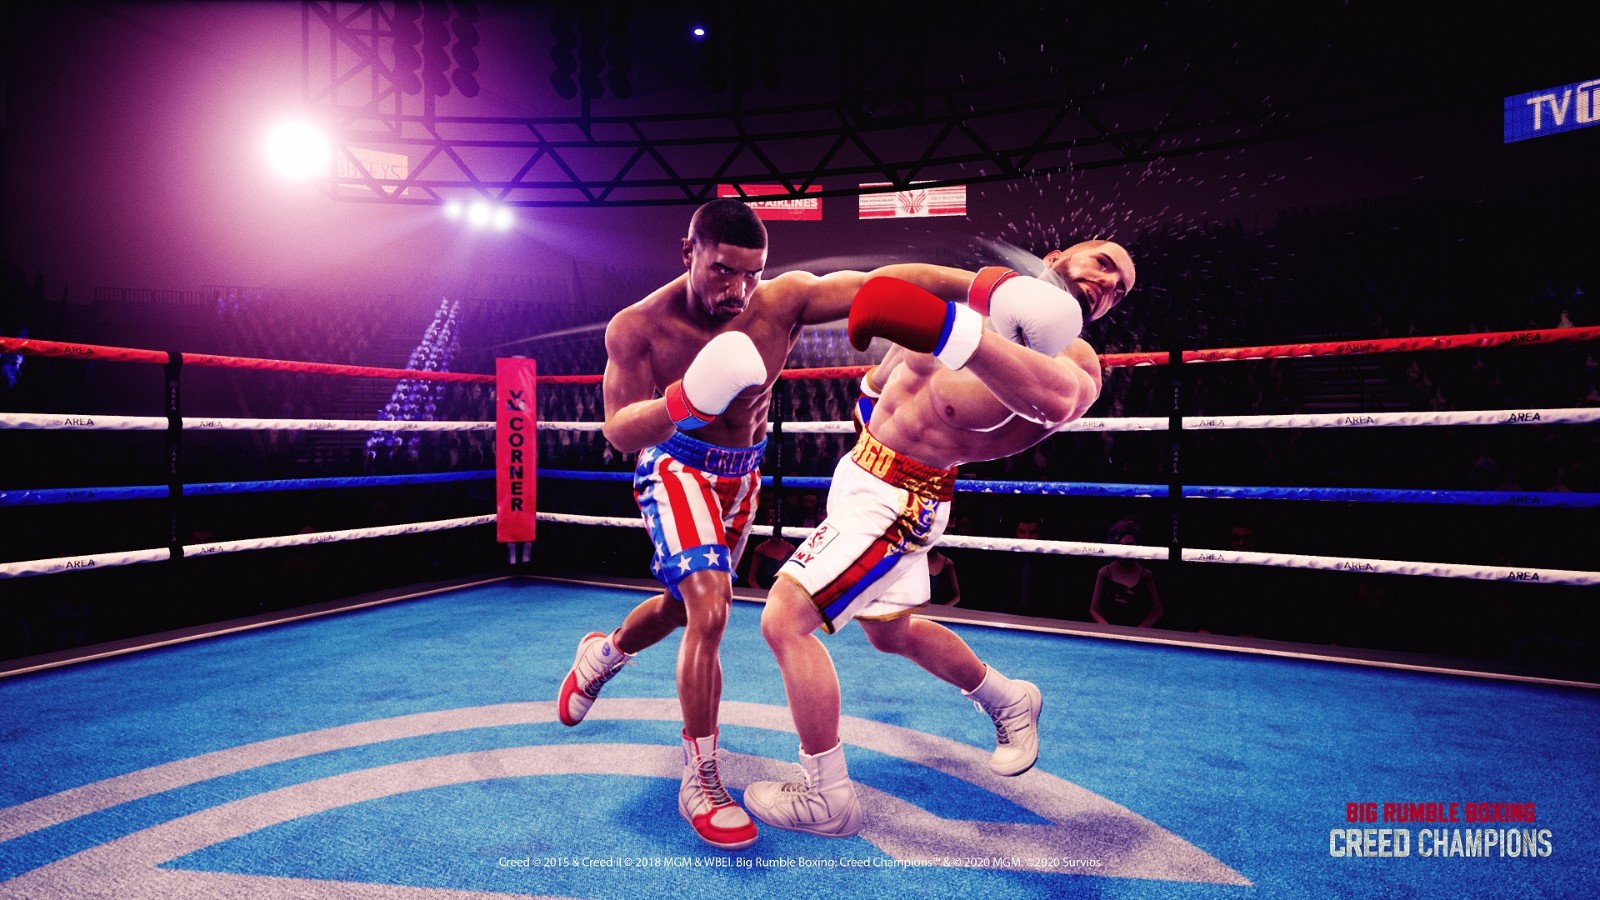 拳击游戏《Big Rumble Boxing Creed Champions》即将上线